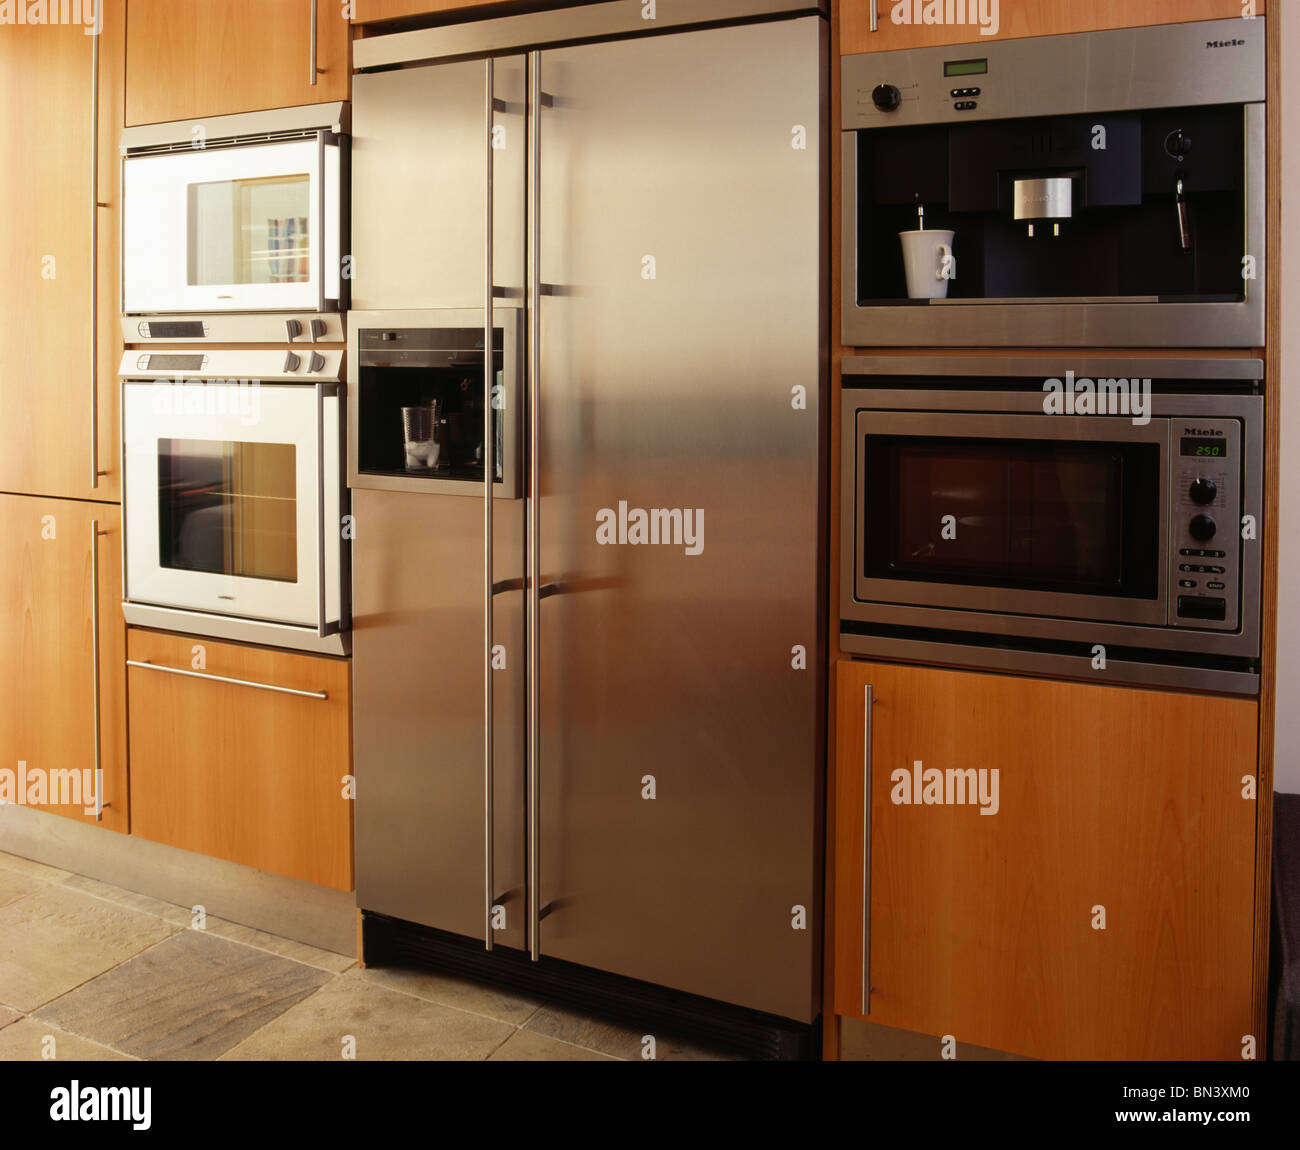 Large american style stainless steel fridge freezer in Banque de  photographies et d'images à haute résolution - Alamy